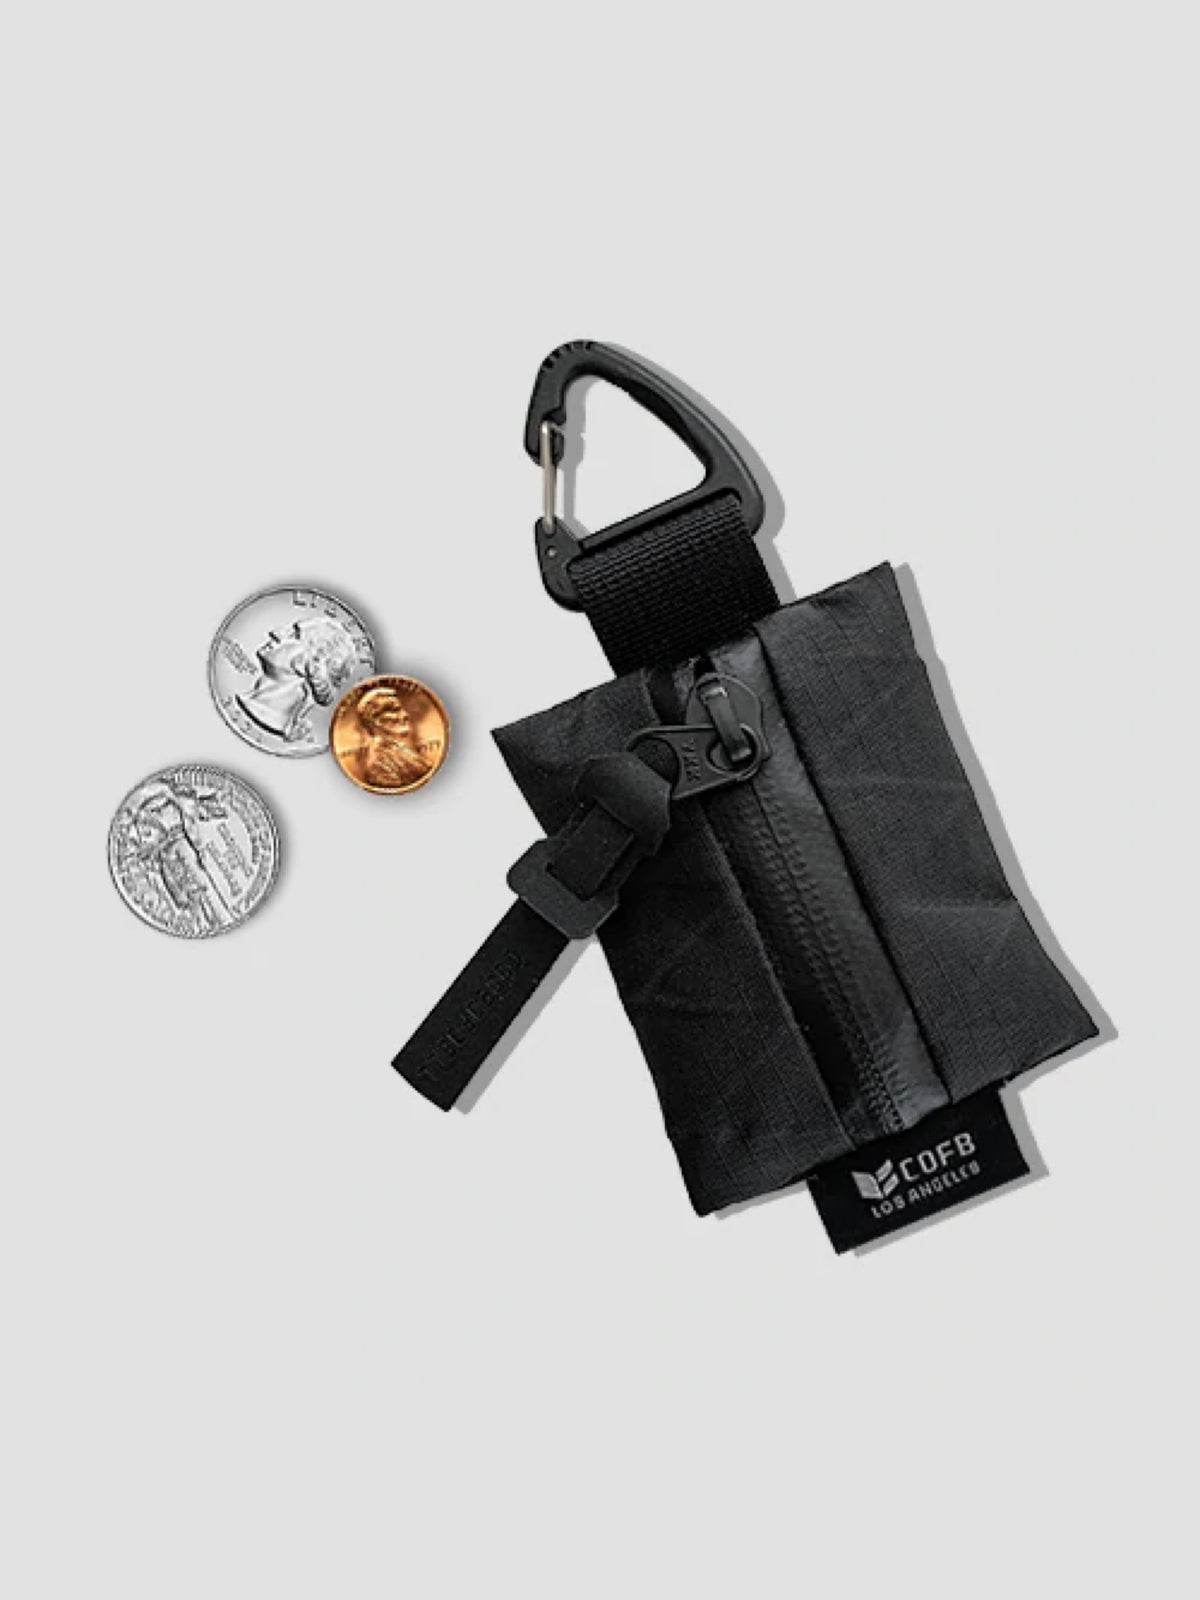 Code Of Bell ANNEX Zip Zipper Case